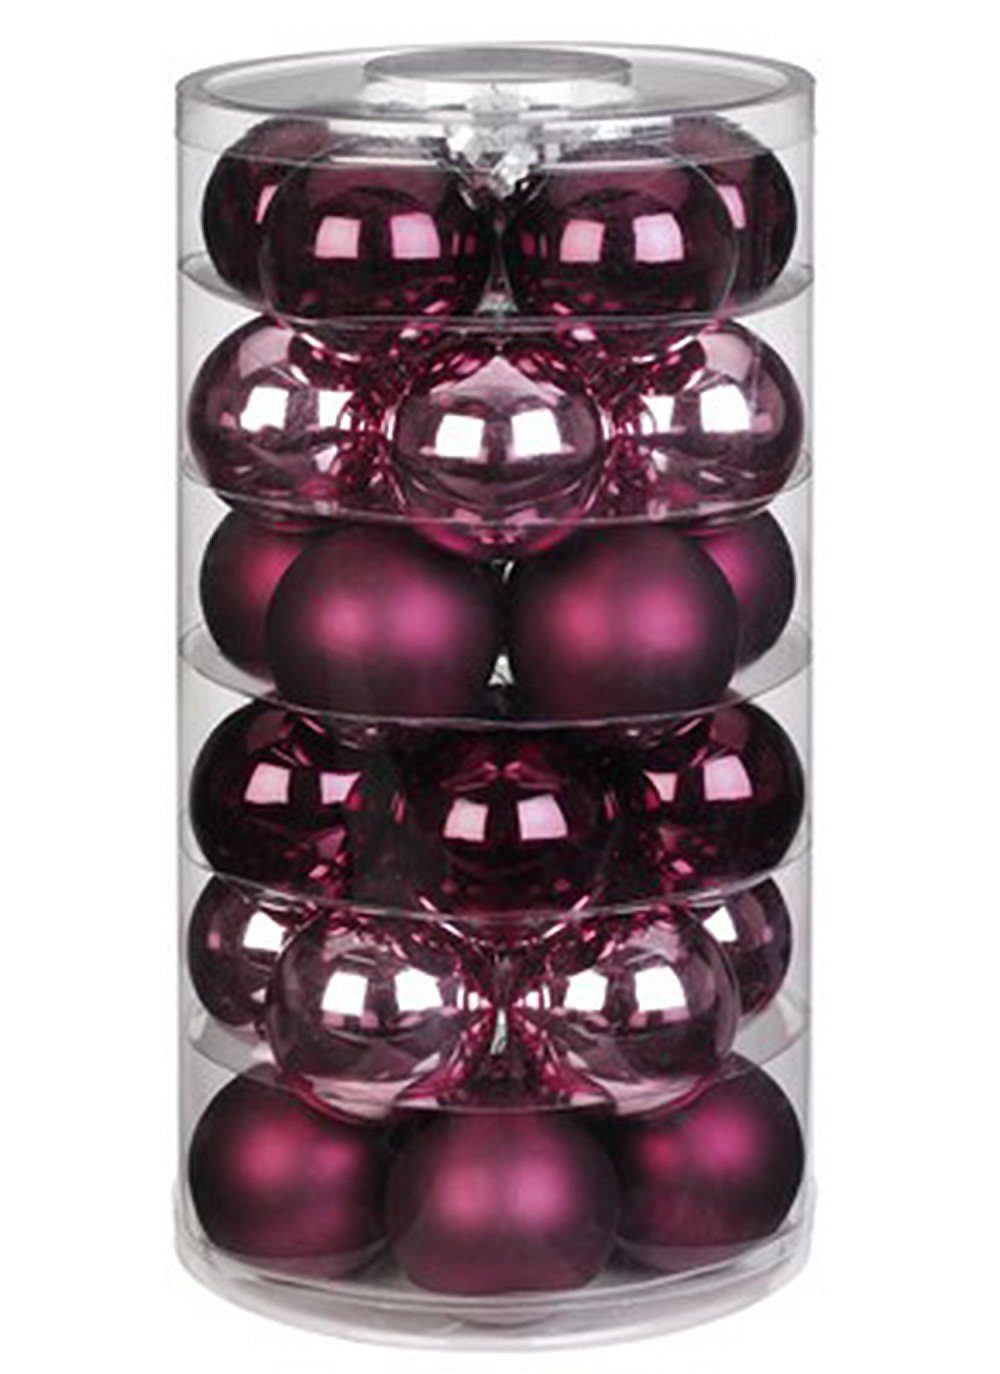 MAGIC by Inge Weihnachtsbaumkugel, Weihnachtskugeln Glas 6cm Berry Kiss, 30 Stück | Weihnachtskugeln